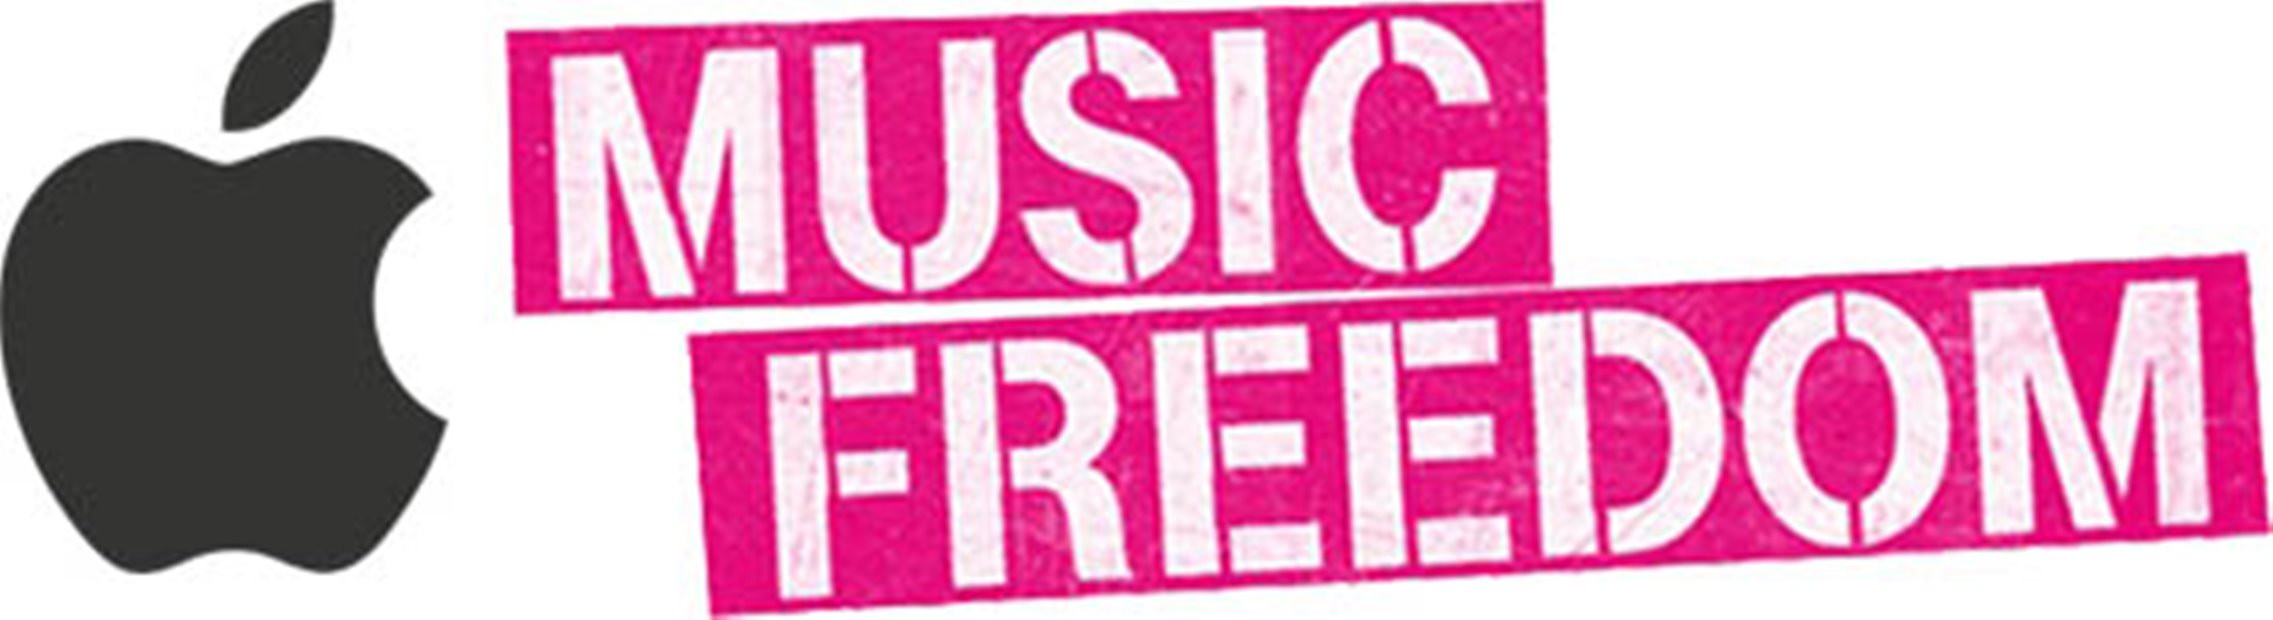 Apple Music transmitiendo gratis T-Mobile